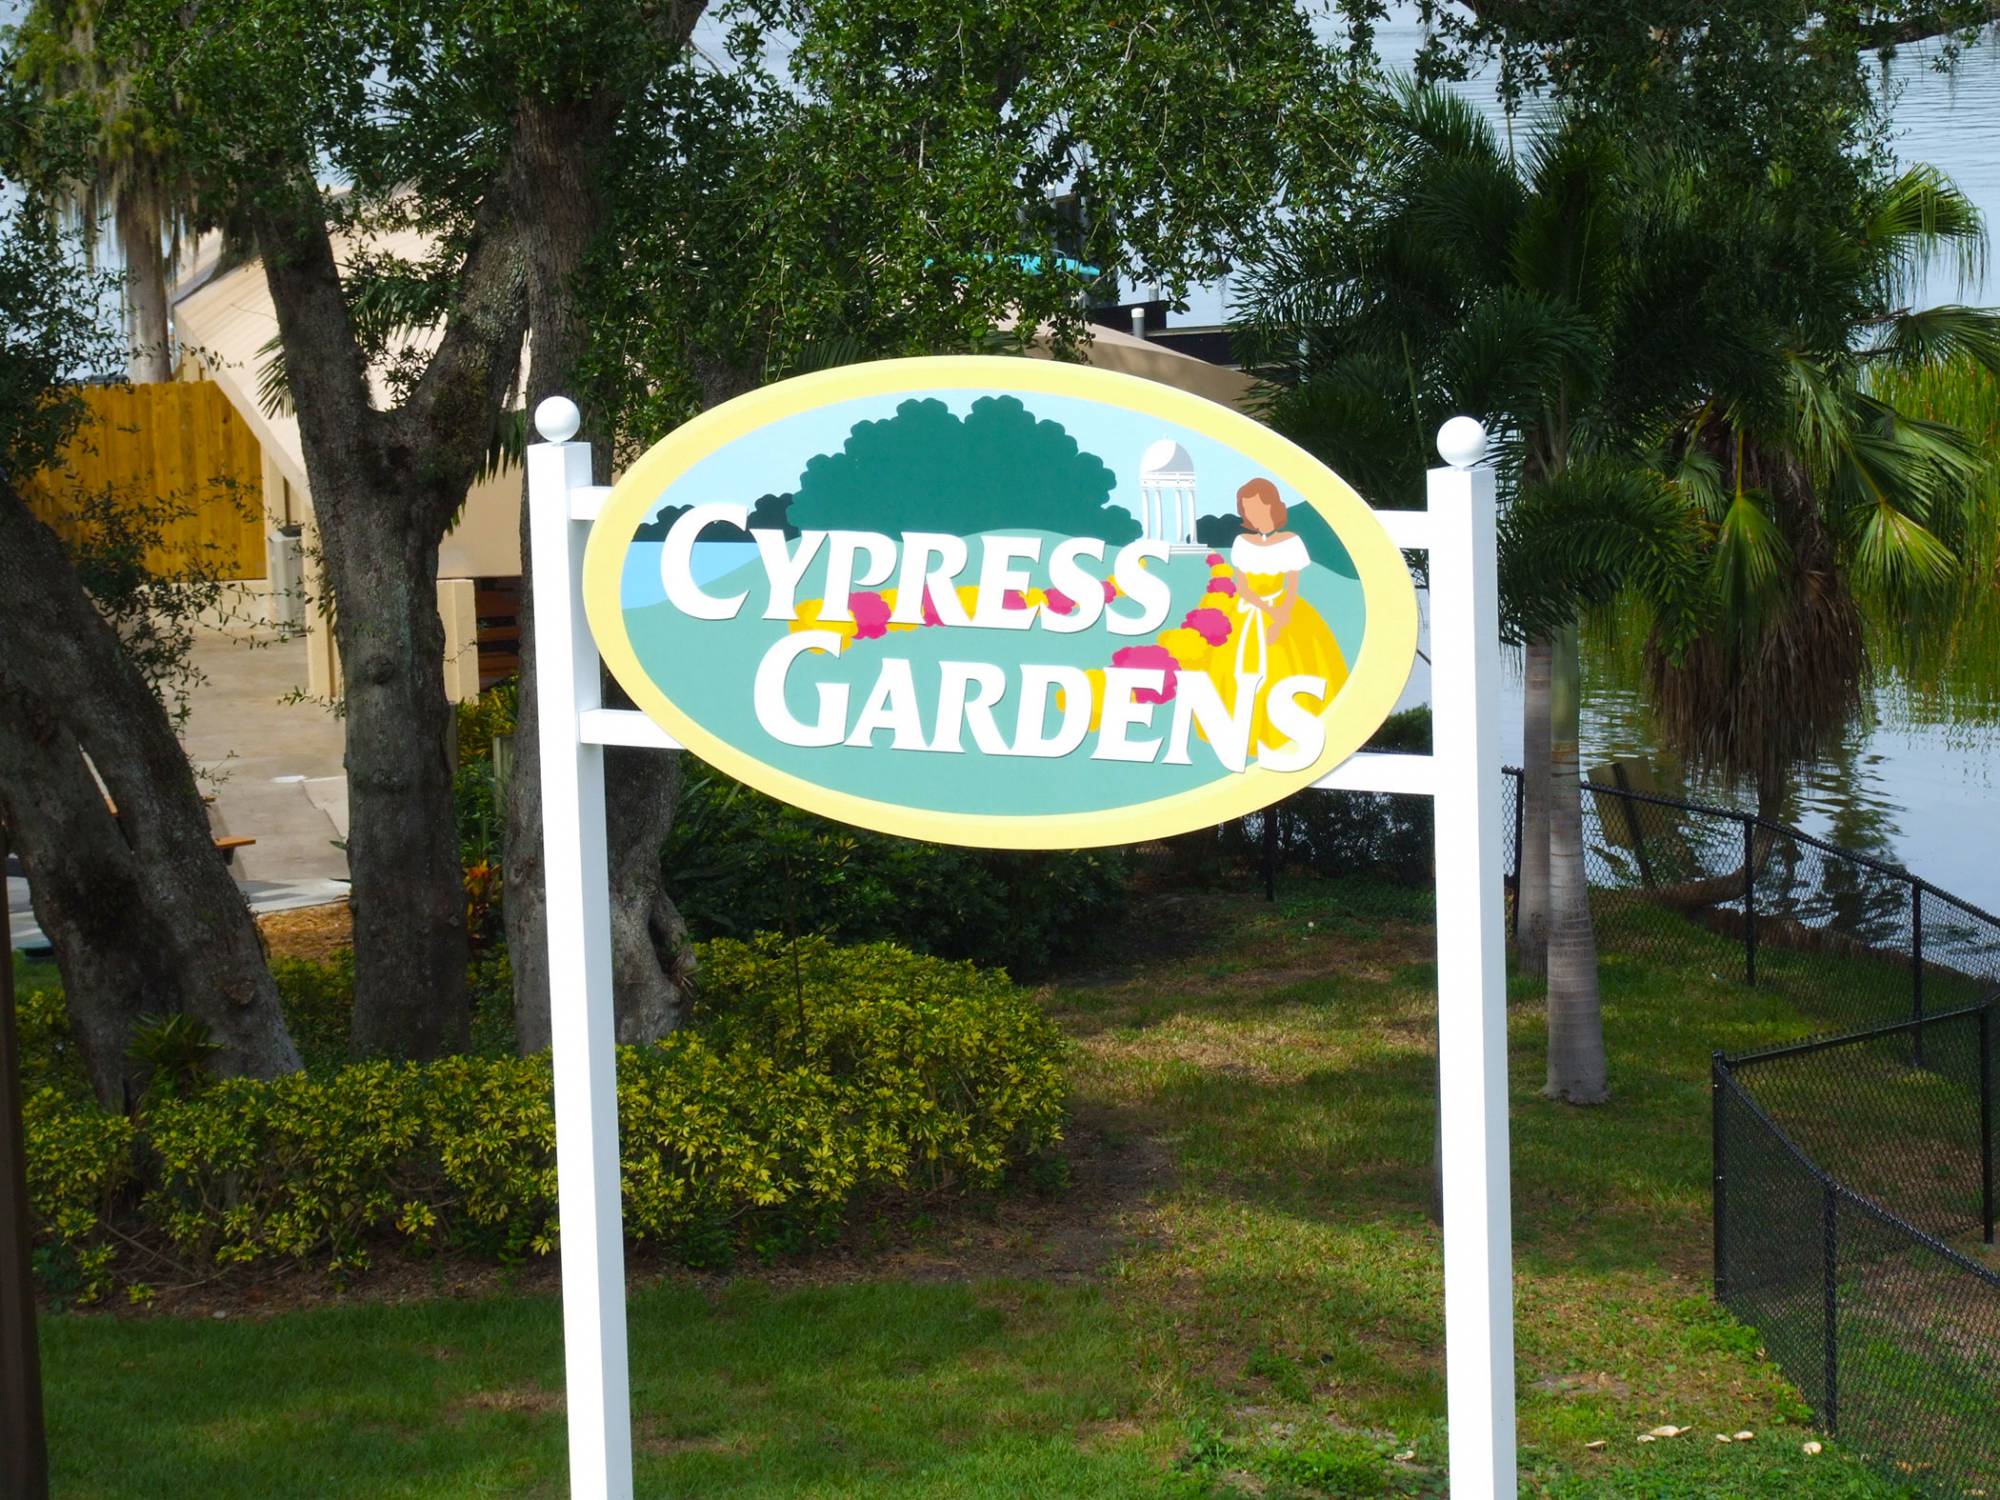 Cypress Gardens in LEGOLAND Florida